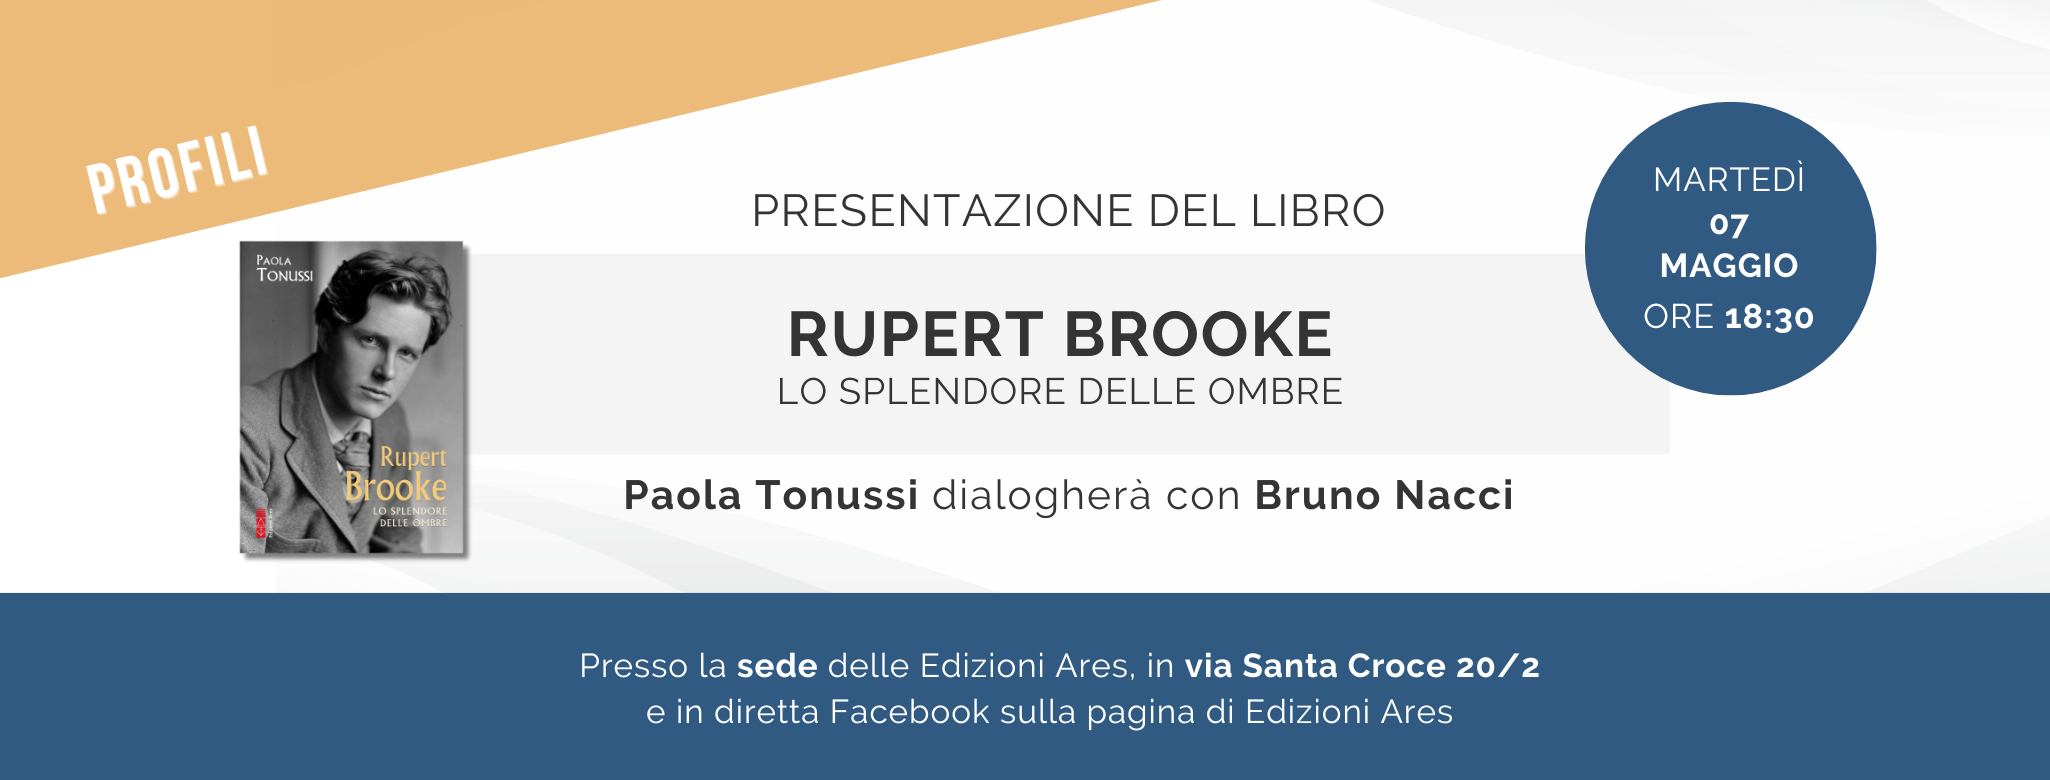 Paola Tonussi presenta il suo libro "Rupert Brooke. Lo splendore delle ombre" in Ares